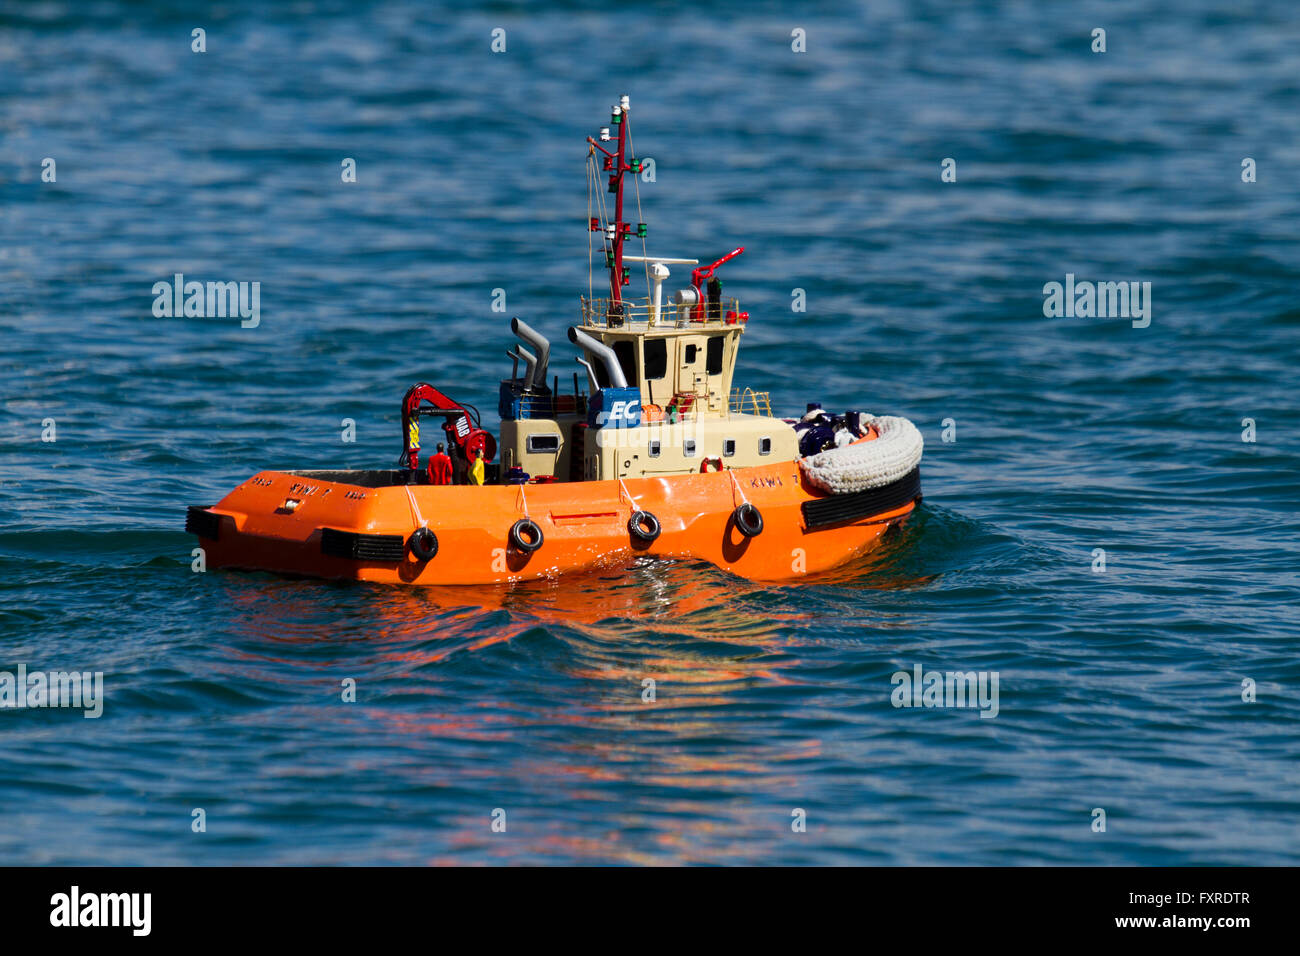 Un modelo de control remoto en un barco dedicado al lago en frente de mar, New Brighton Wallasey, Reino Unido Foto de stock